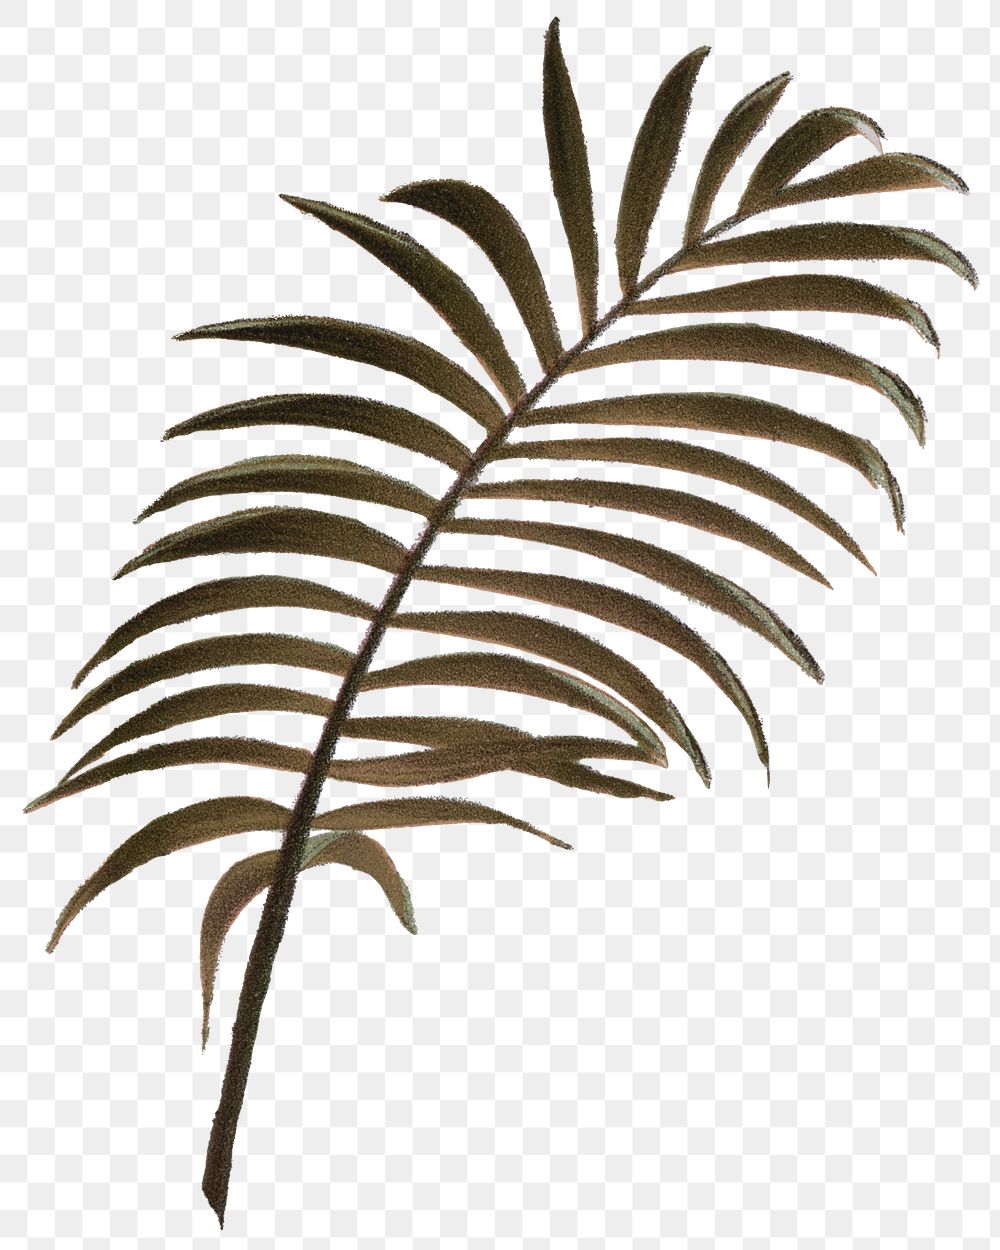 PNG palm leaf sticker, transparent background